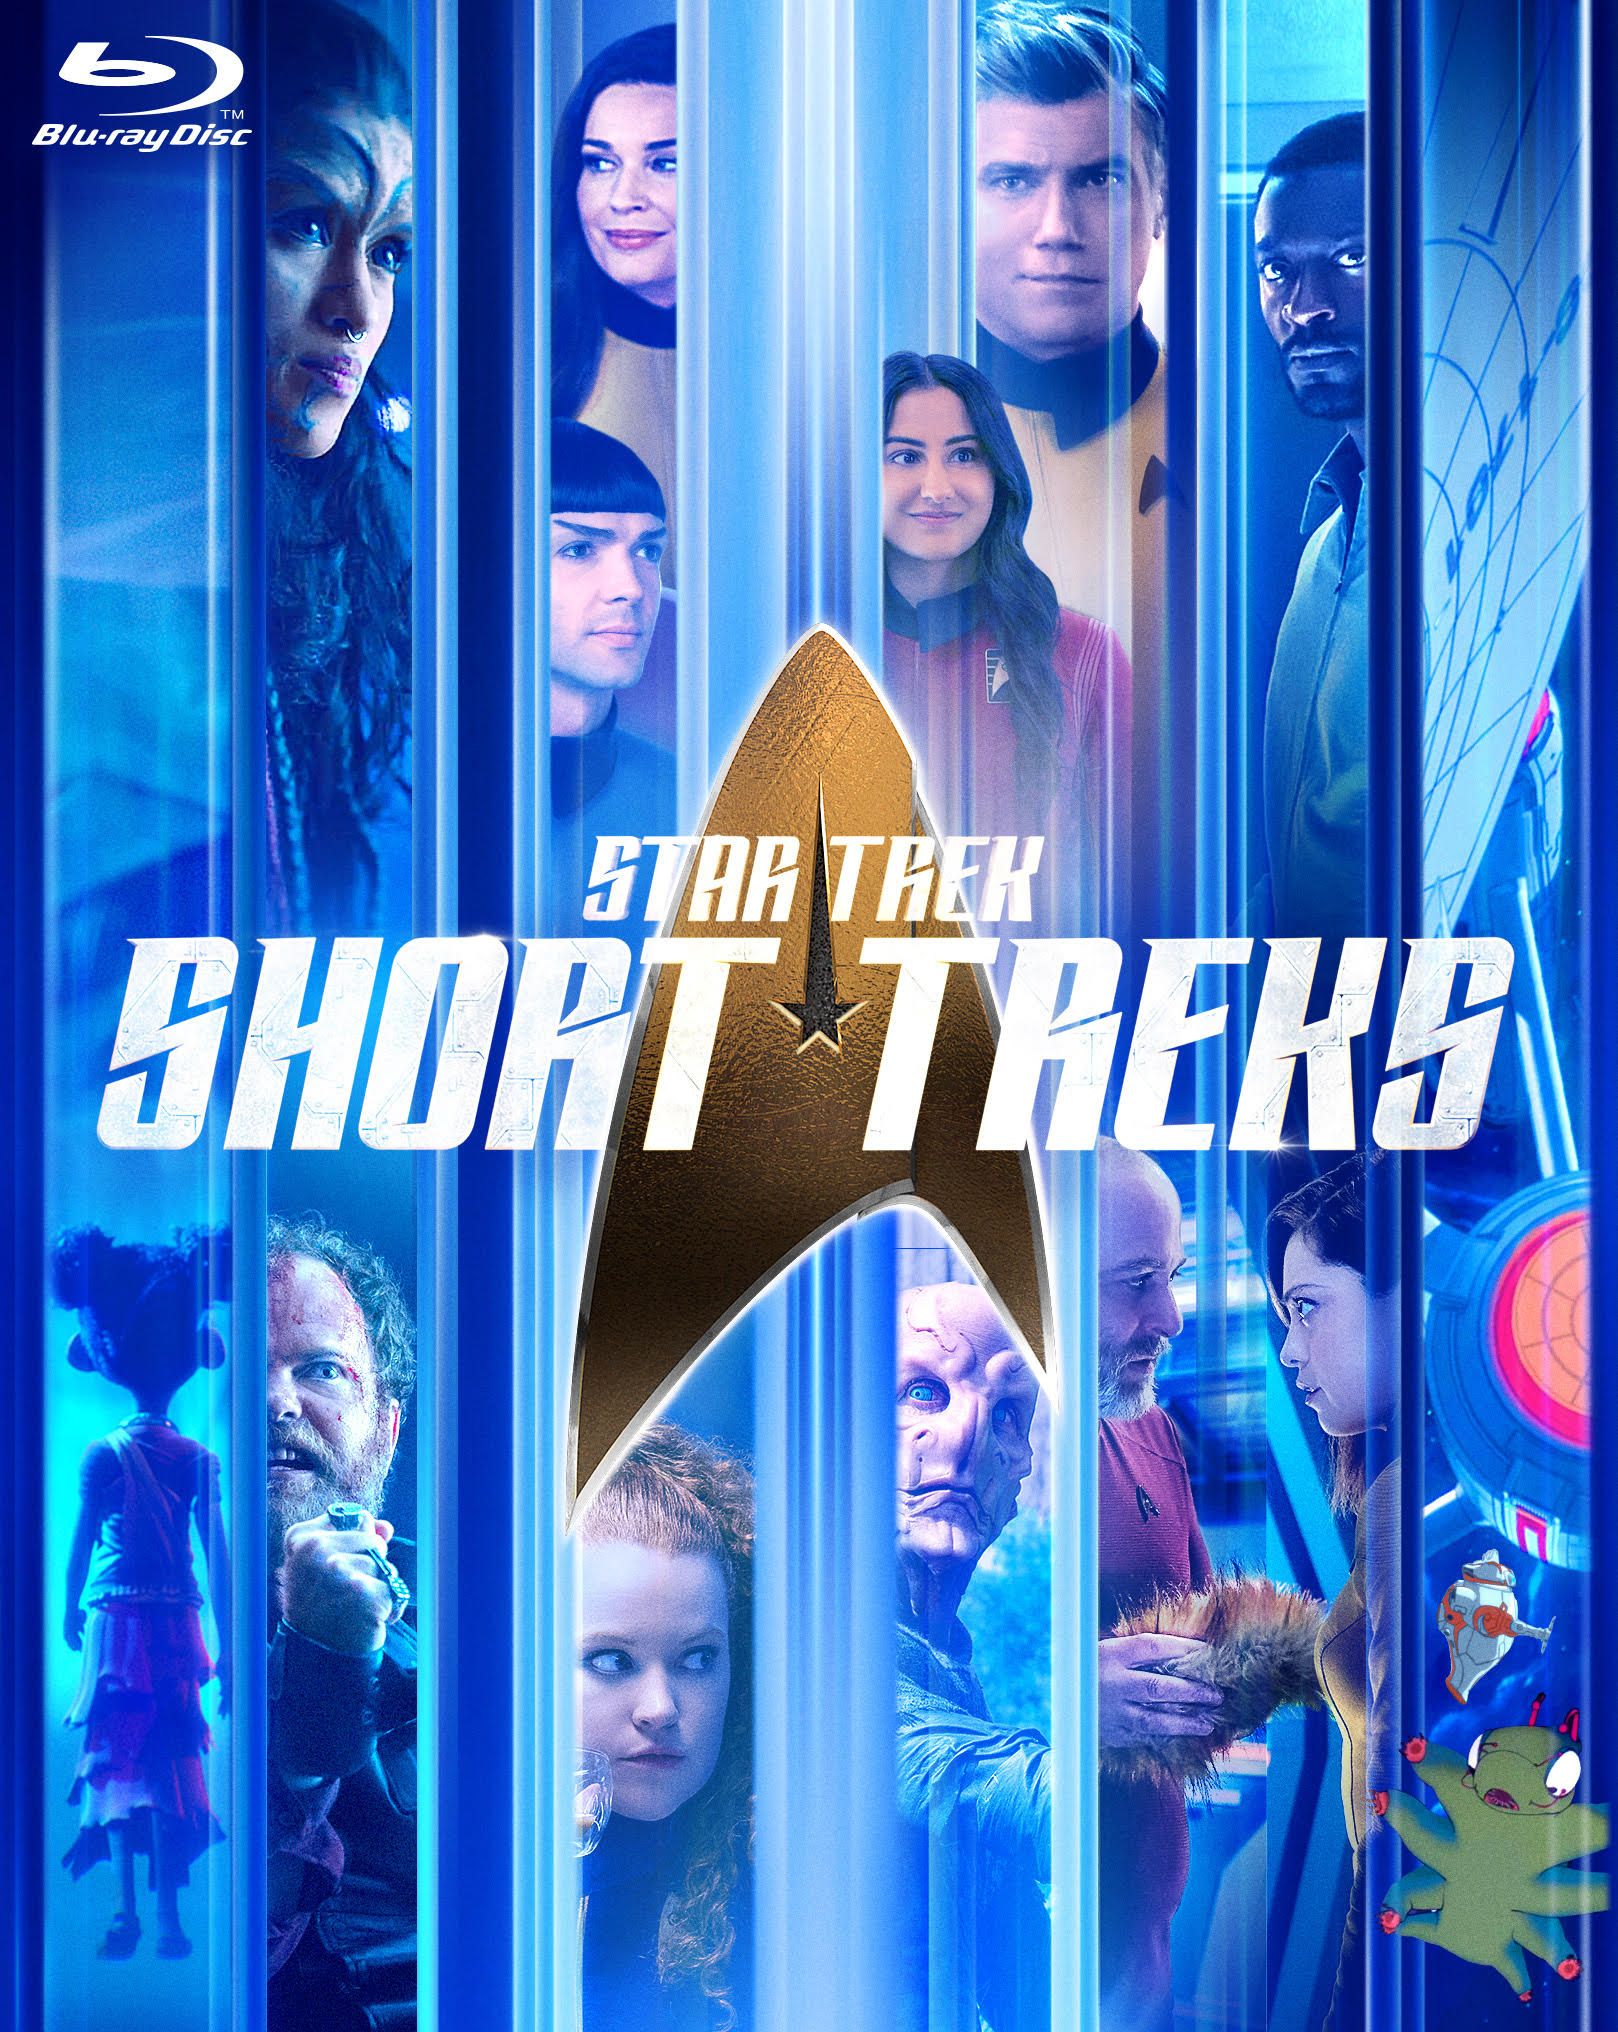 Star Trek Short Treks Blu-ray Cover Art